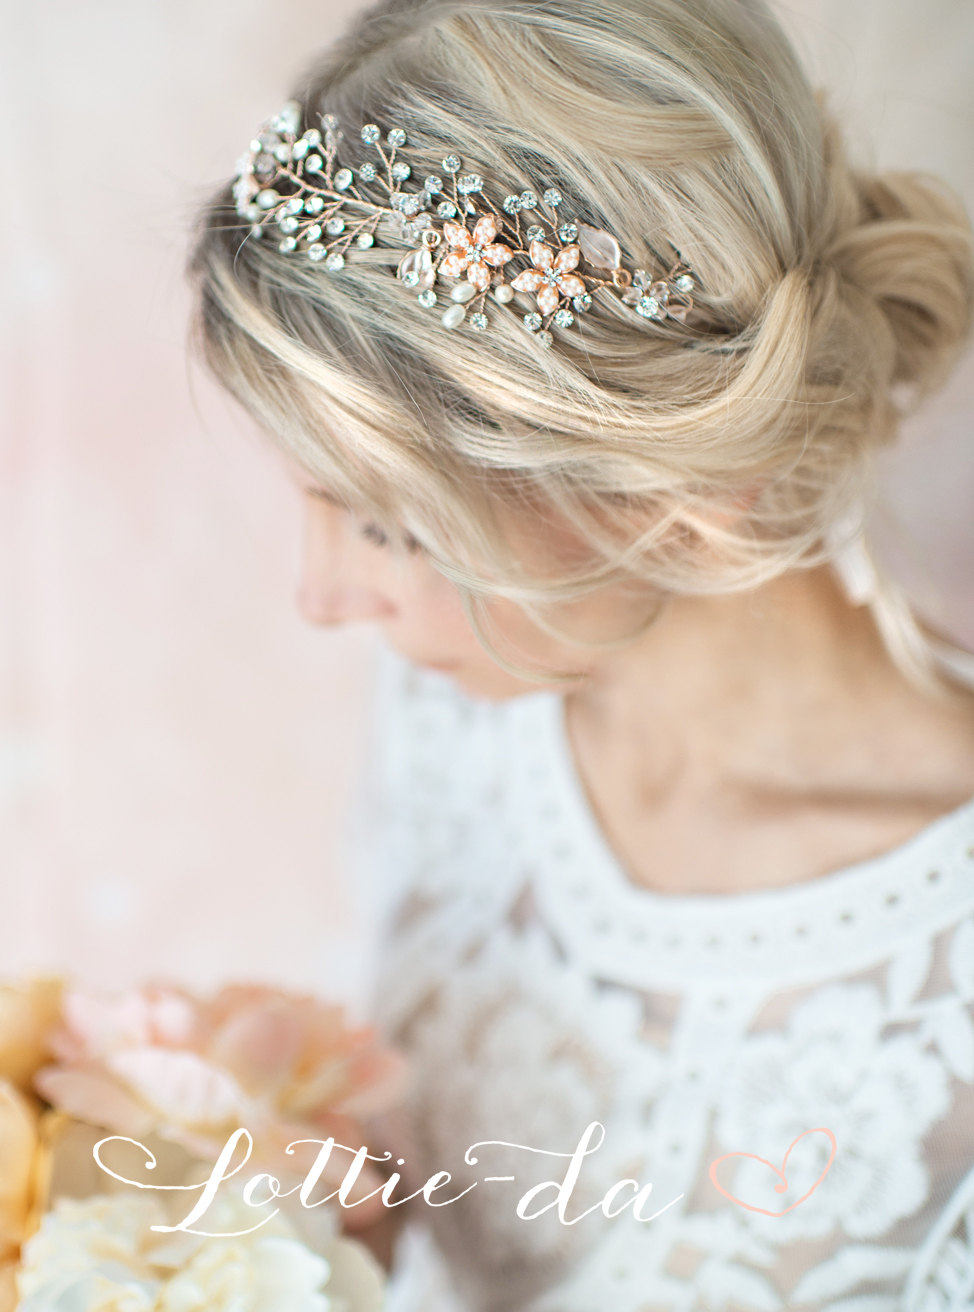 bridal headpieces